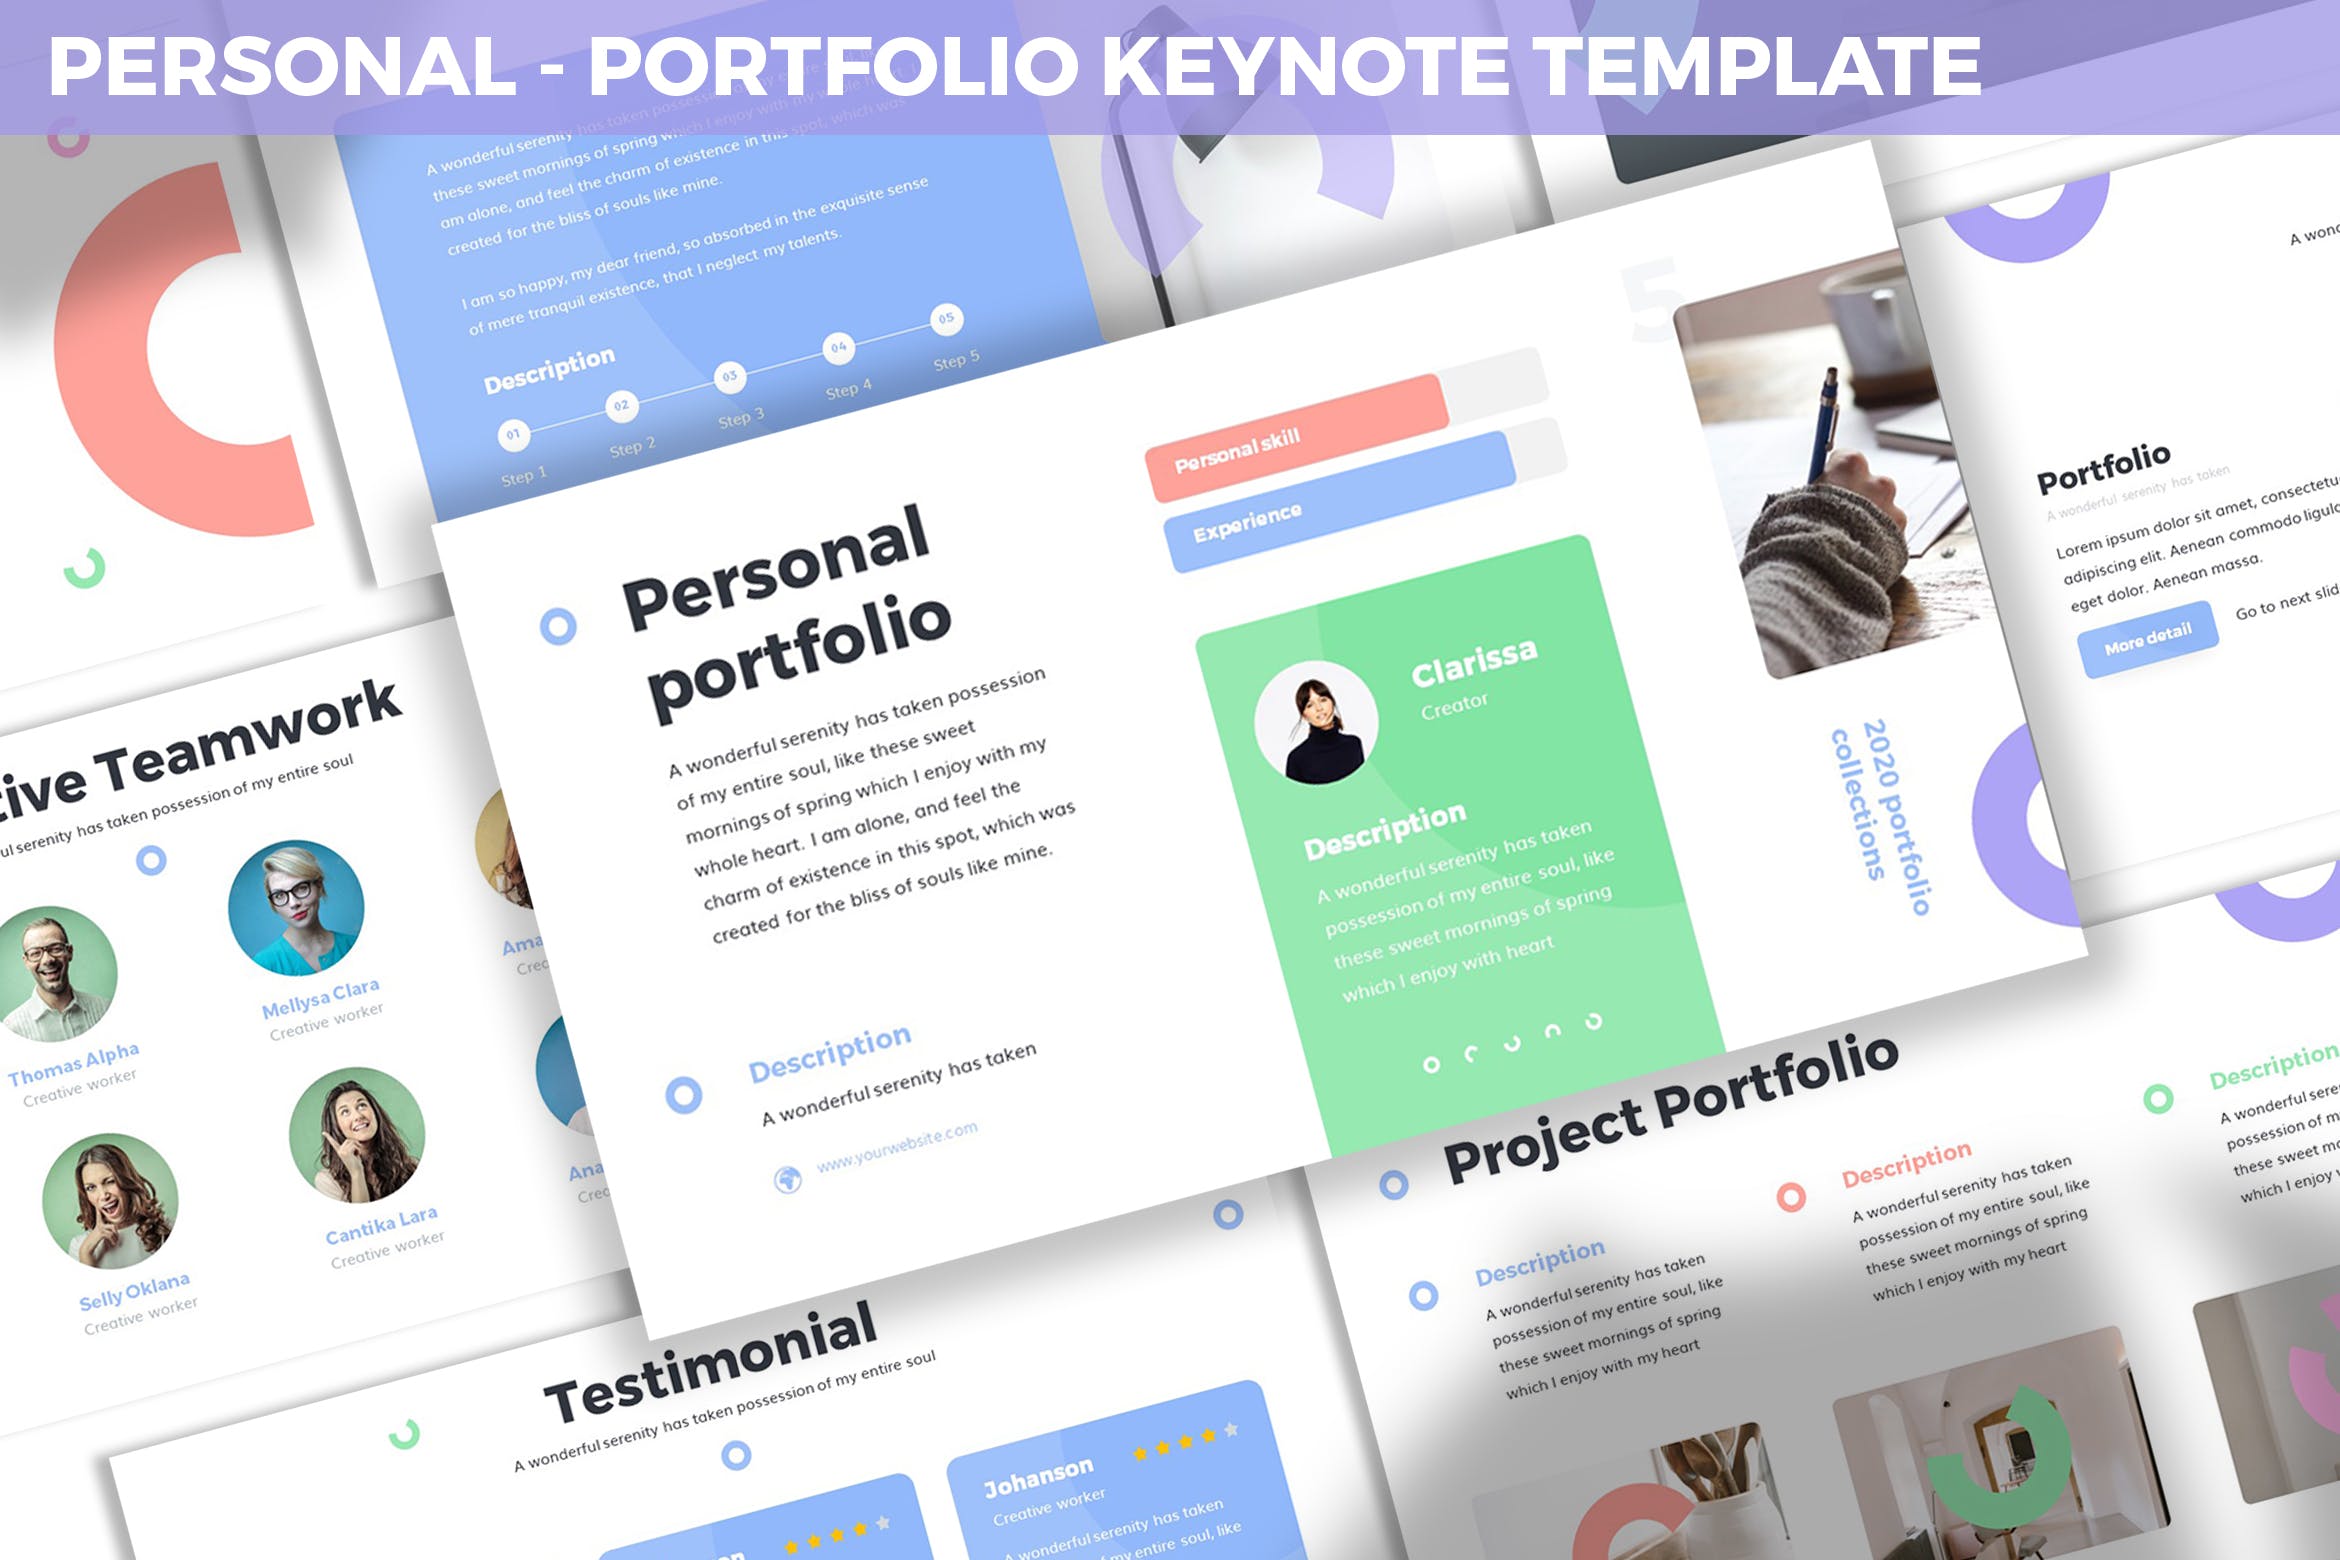 项目融资方案报告第一素材精选Keynote模板模板 Personal – Portfolio Keynote Template插图